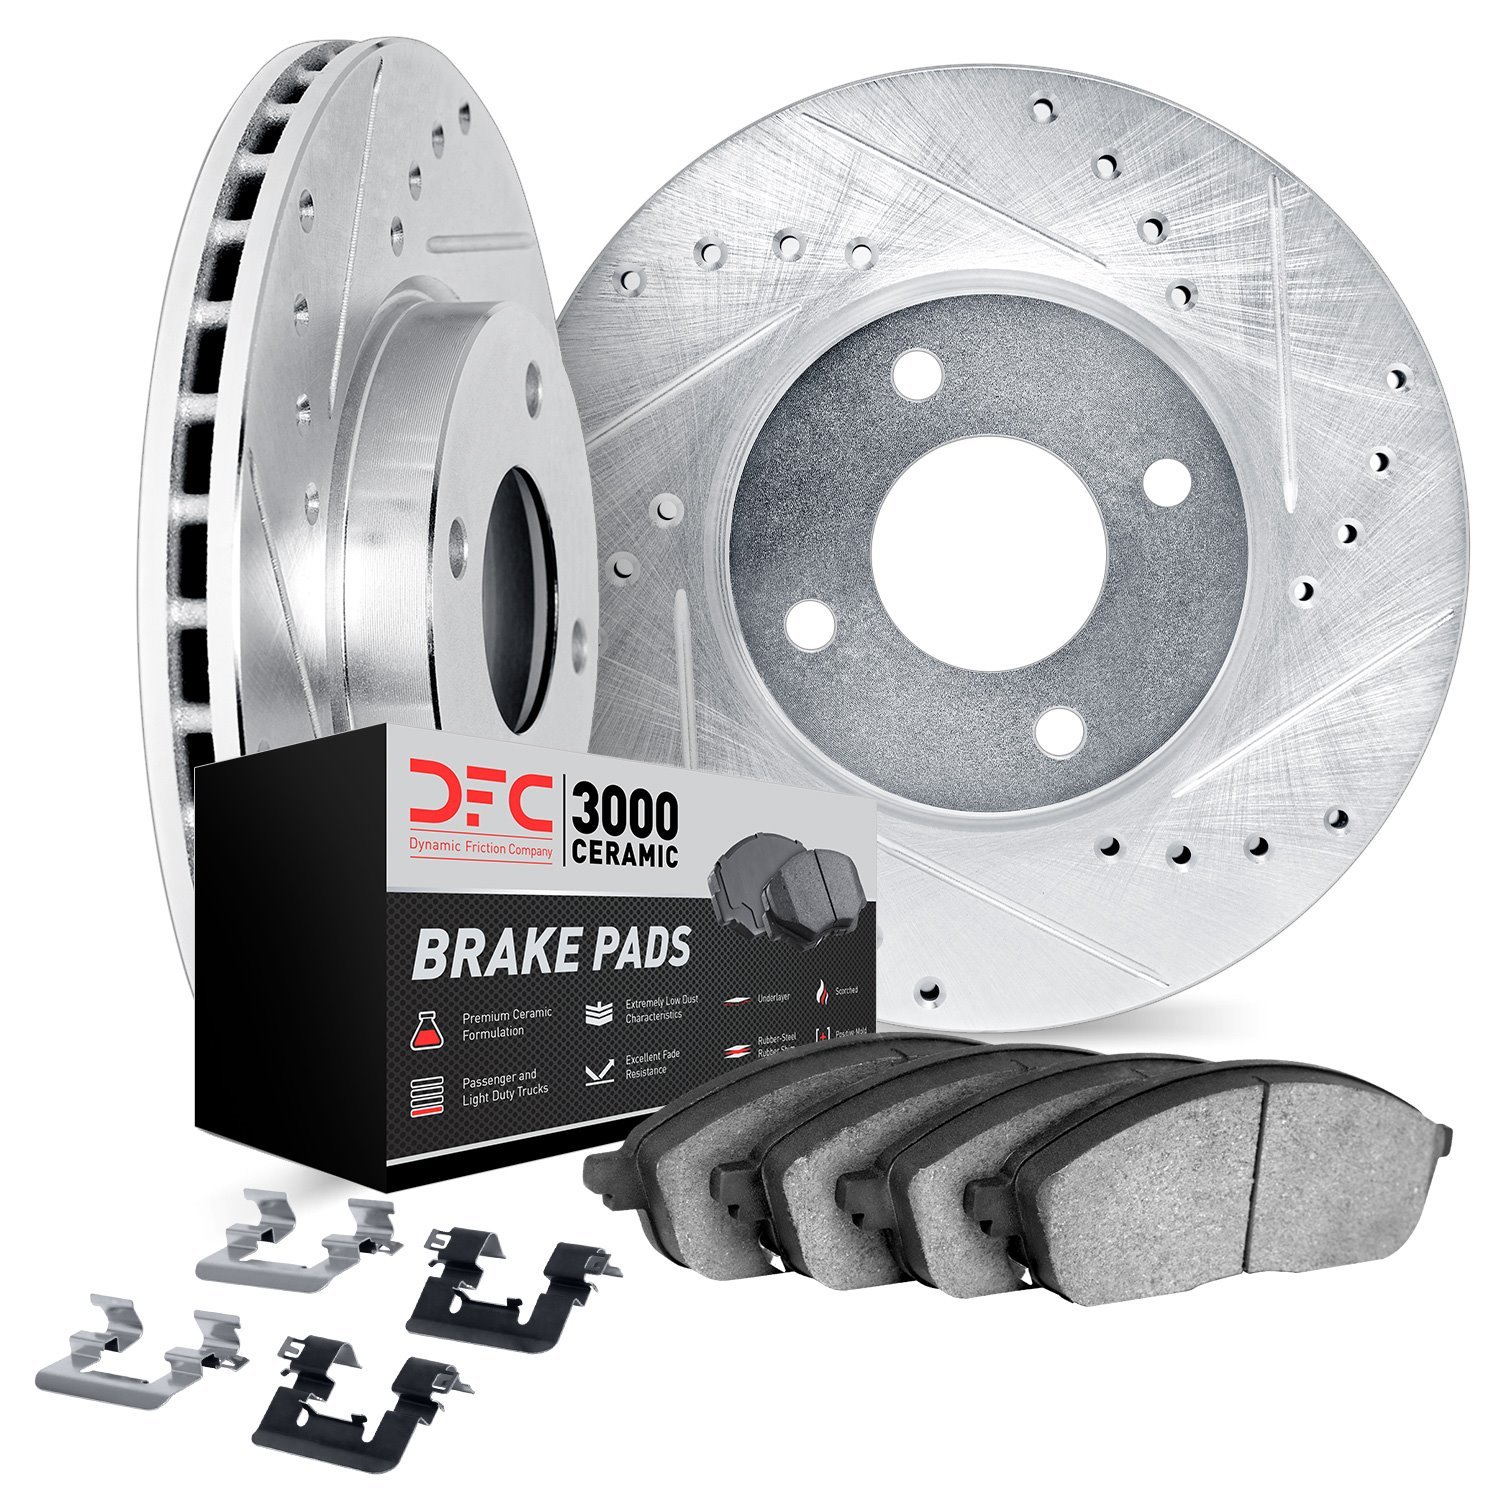 7312-91001 Drilled/Slotted Brake Rotor with 3000-Series Ceramic Brake Pads Kit & Hardware [Silver], 2012-2015 Lexus/Toyota/Scion